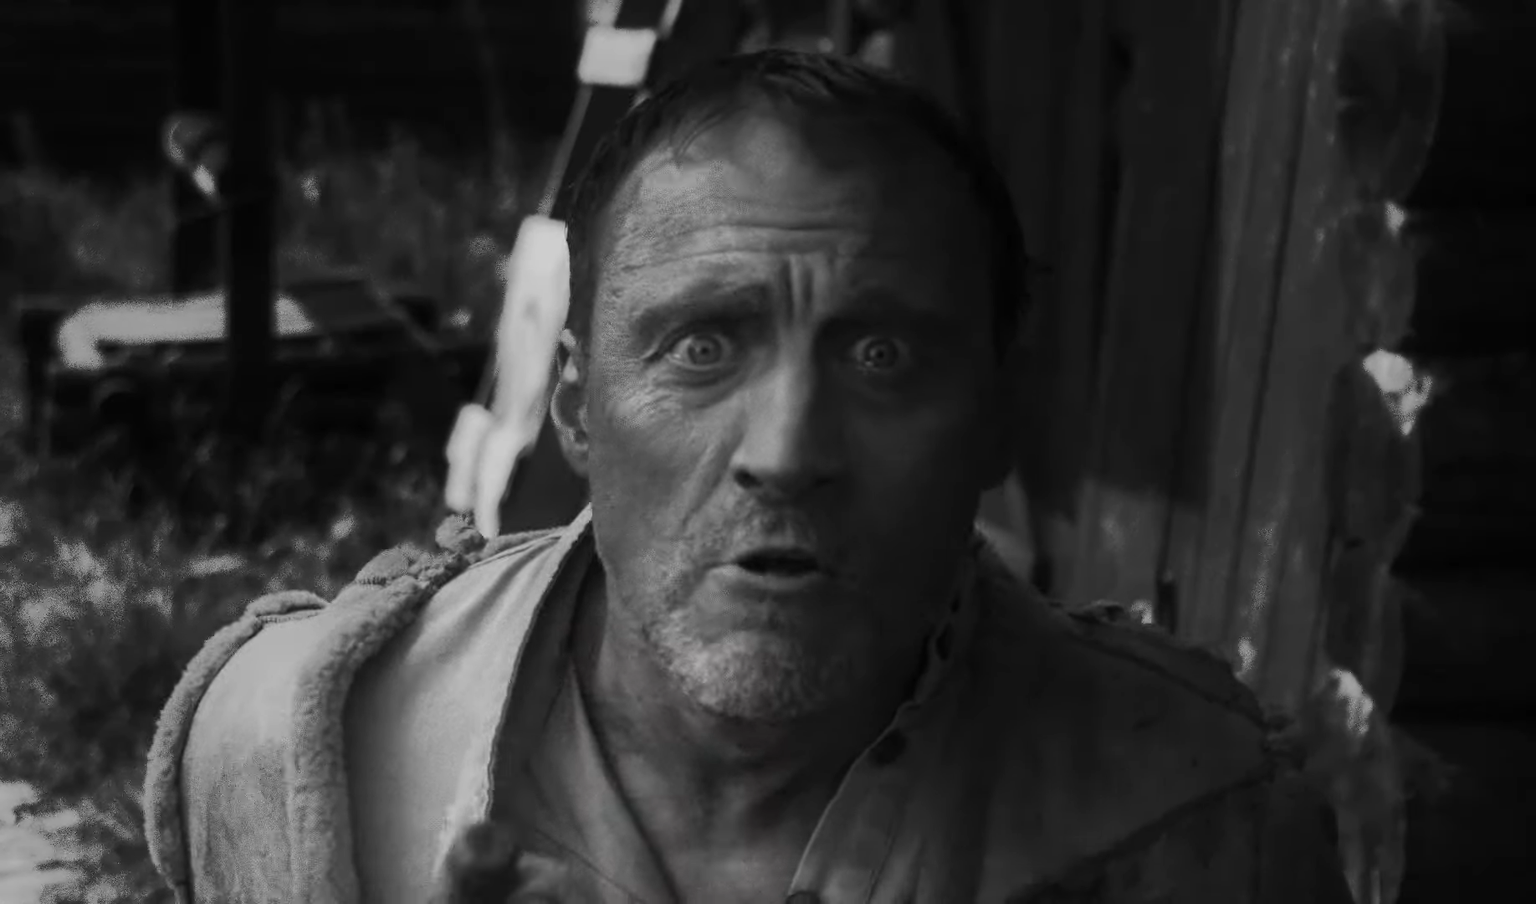 Кадр из фильма Ромы Либерова "Сокровенный человек", где герой актера Анатолия Белого лает в камеру.